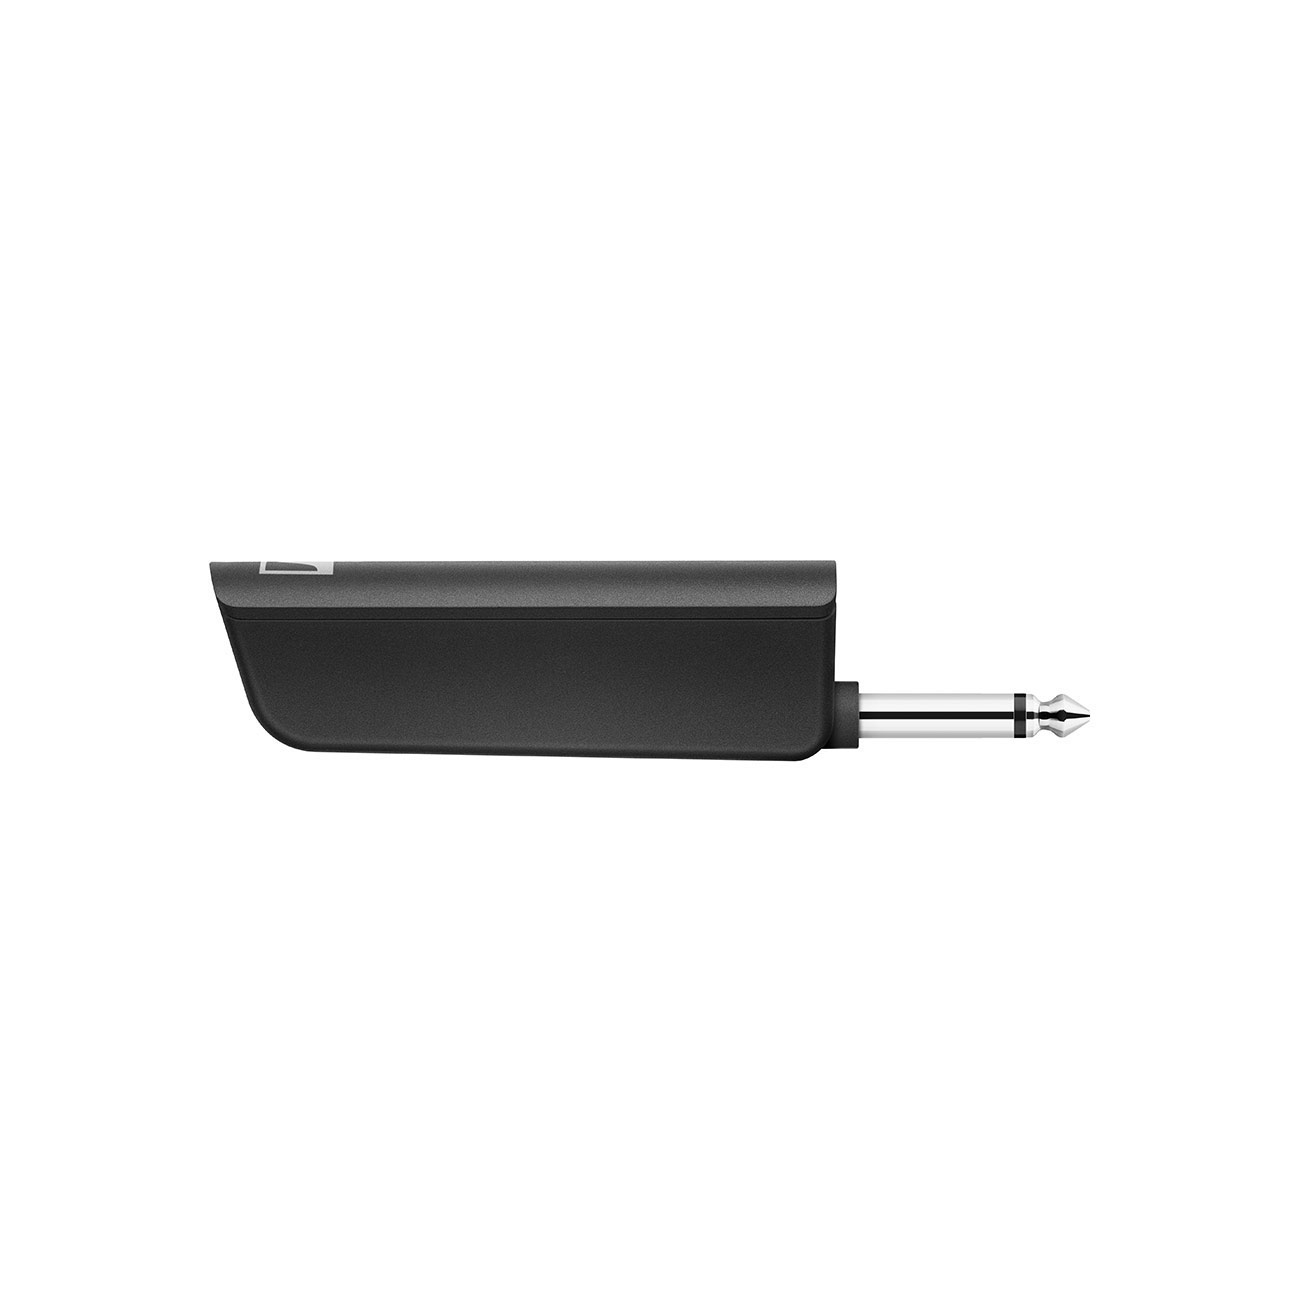 Sennheiser XSW-D INSTRUMENT TX XS Wireless Digital Sender mit 6.3 mm Klinken-Eingangsbuchse. inkl. (1) USB-Ladekabel